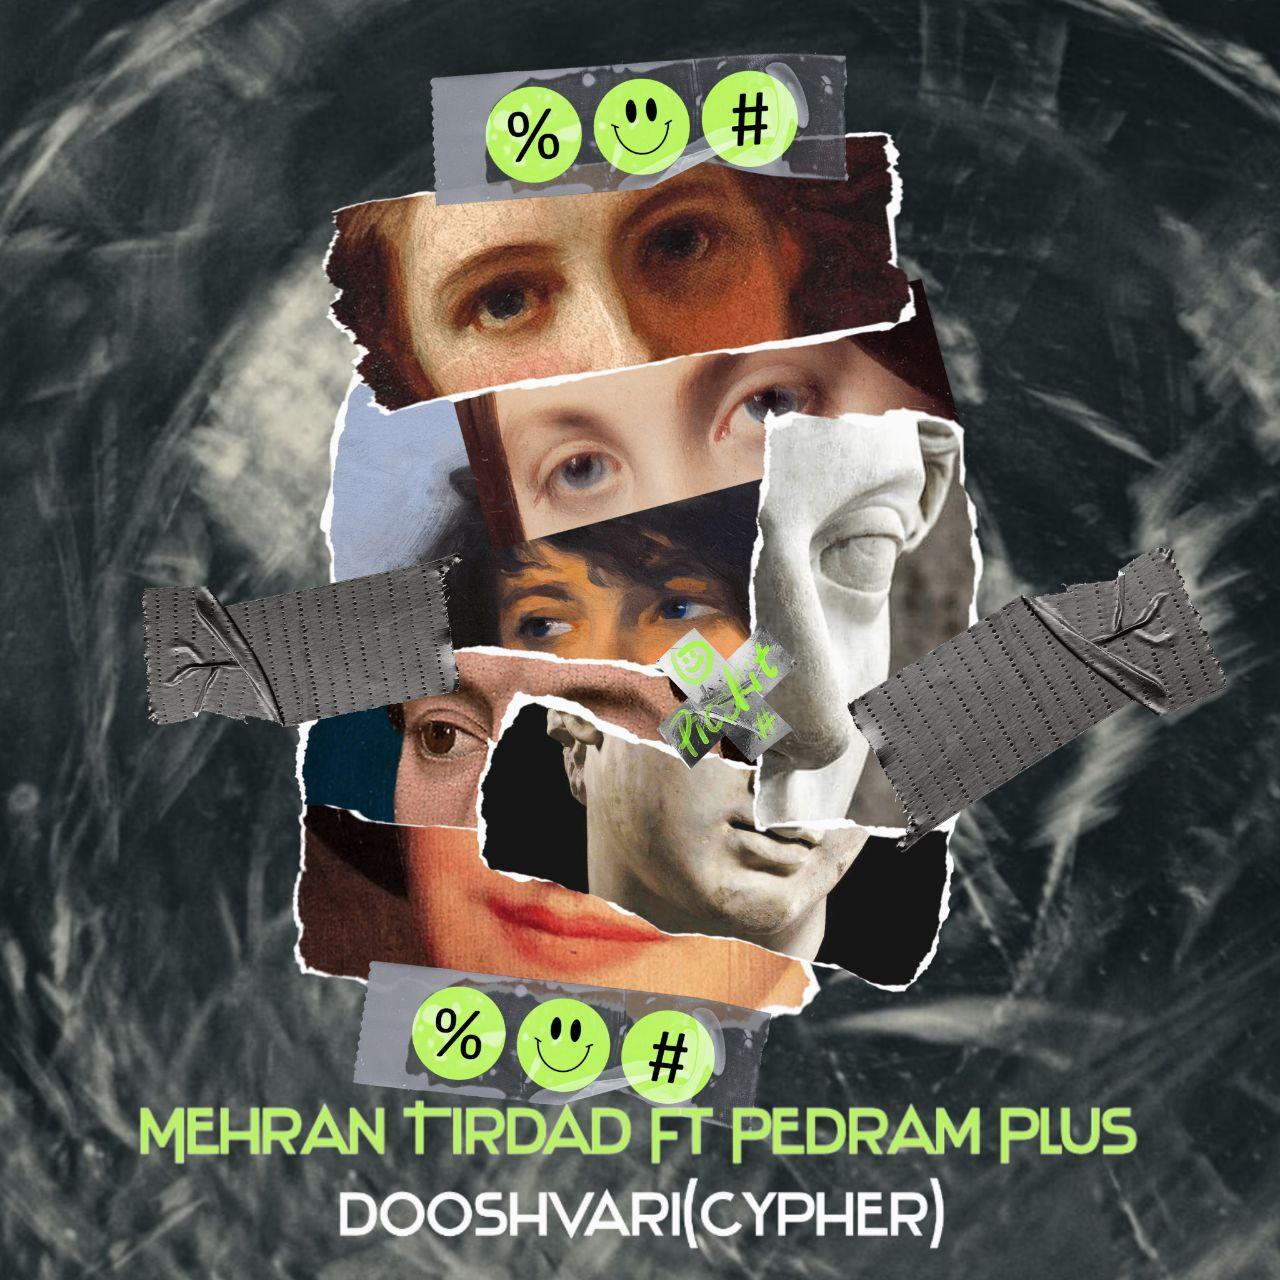  دانلود آهنگ جدید مهران تیرداد - دوشواری | سایفر | Download New Music By Mehran Tirdad - Dooshvari (feat. Pedram Plus) | Cypher